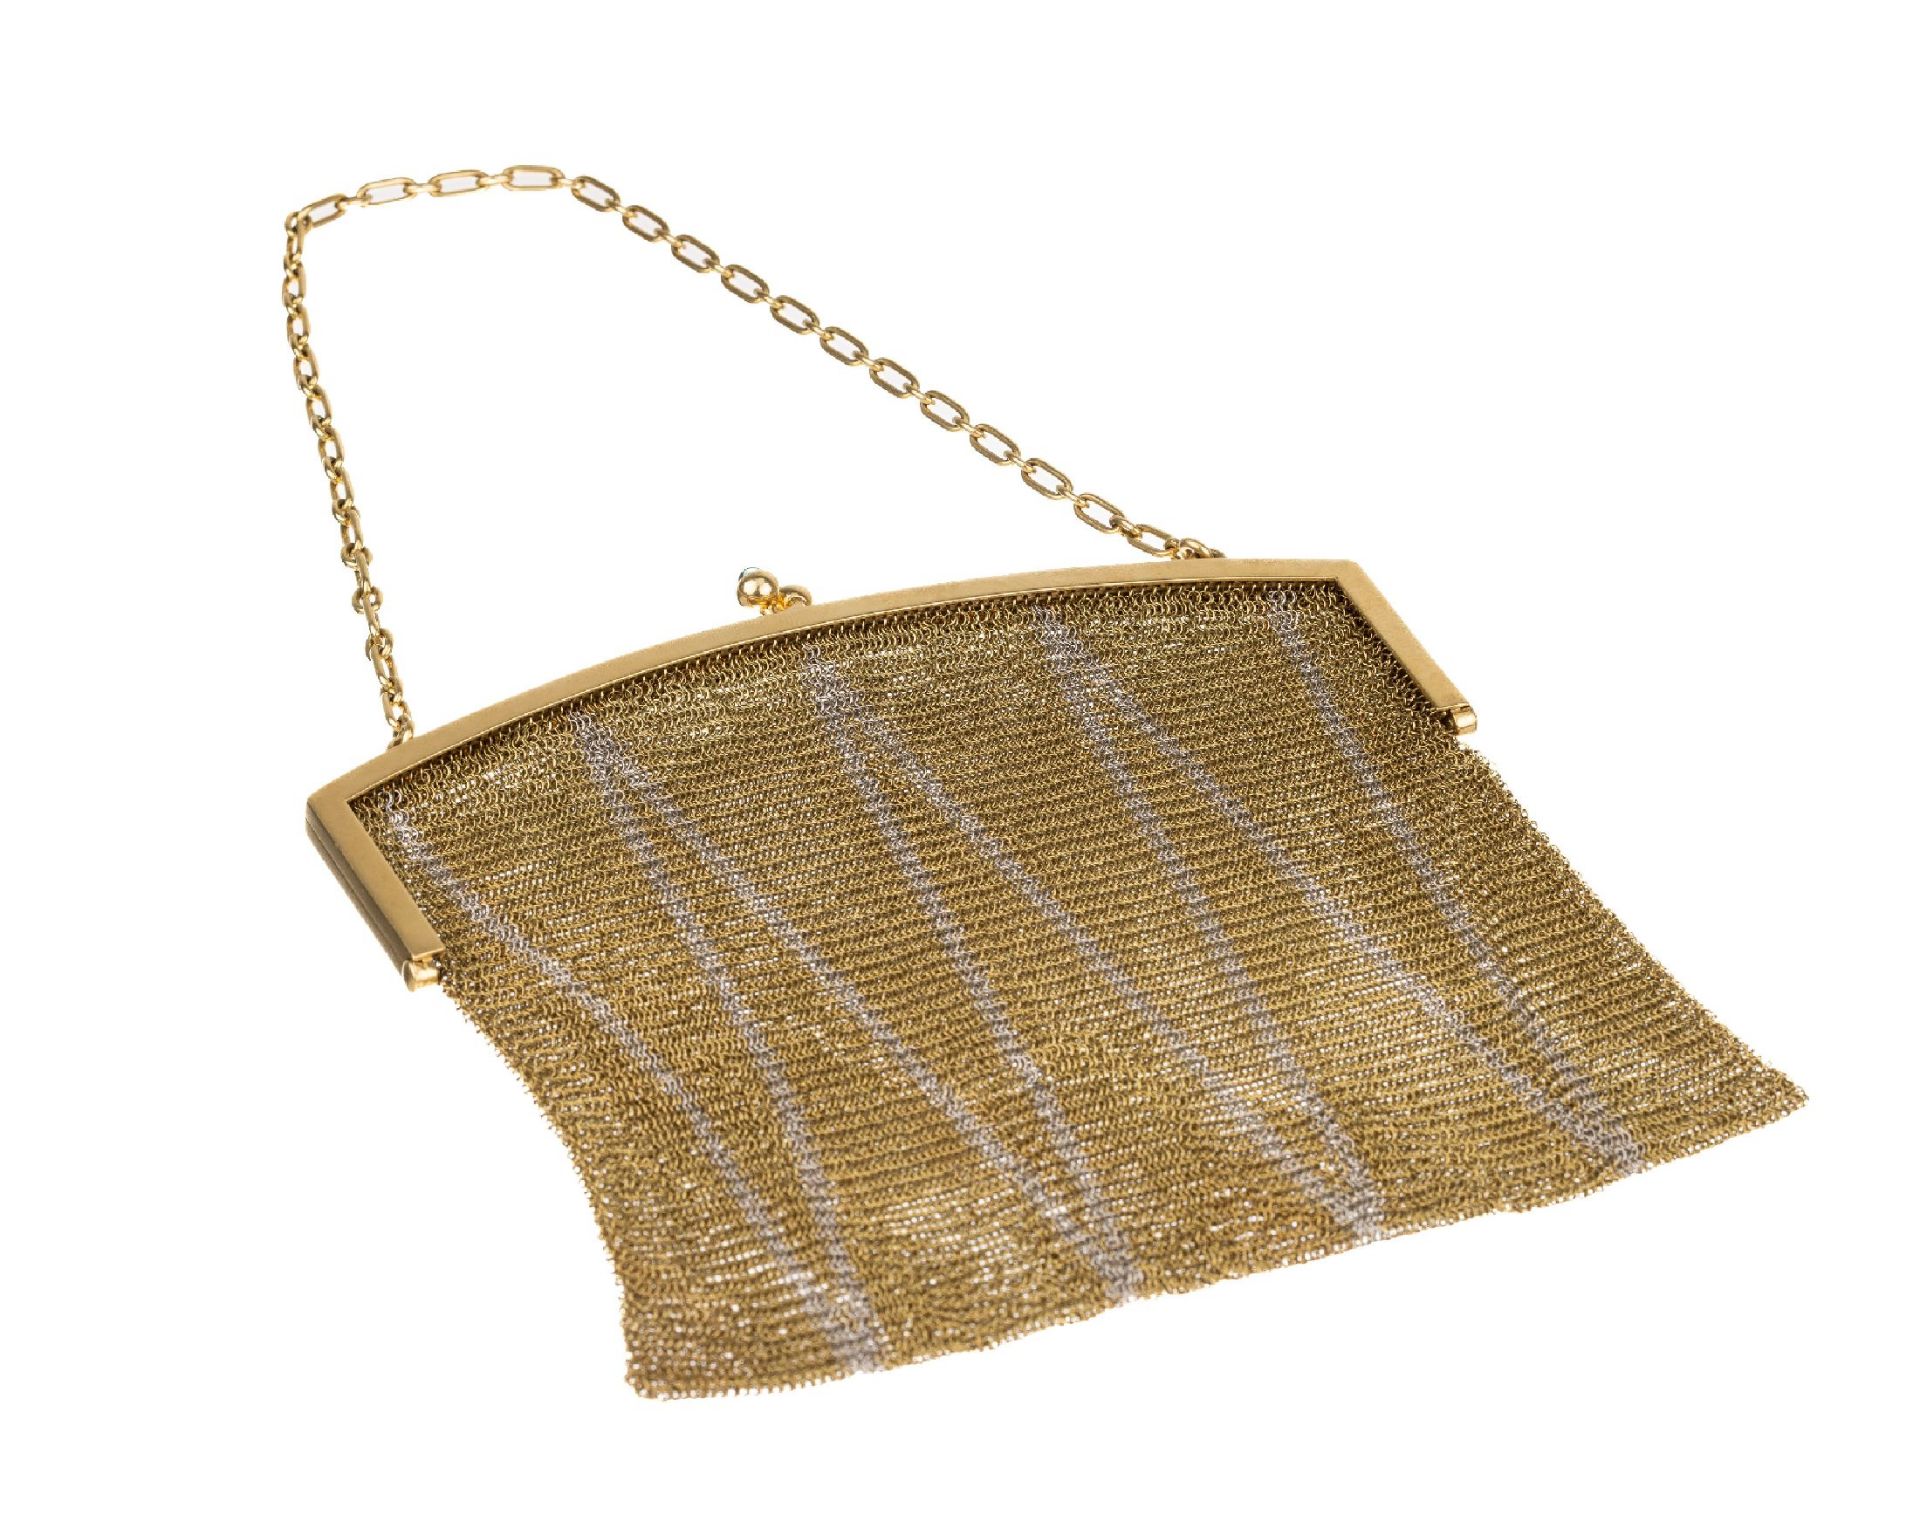 18 kt Gold Handtasche, 1930er Jahre, GG/WG 750/000,